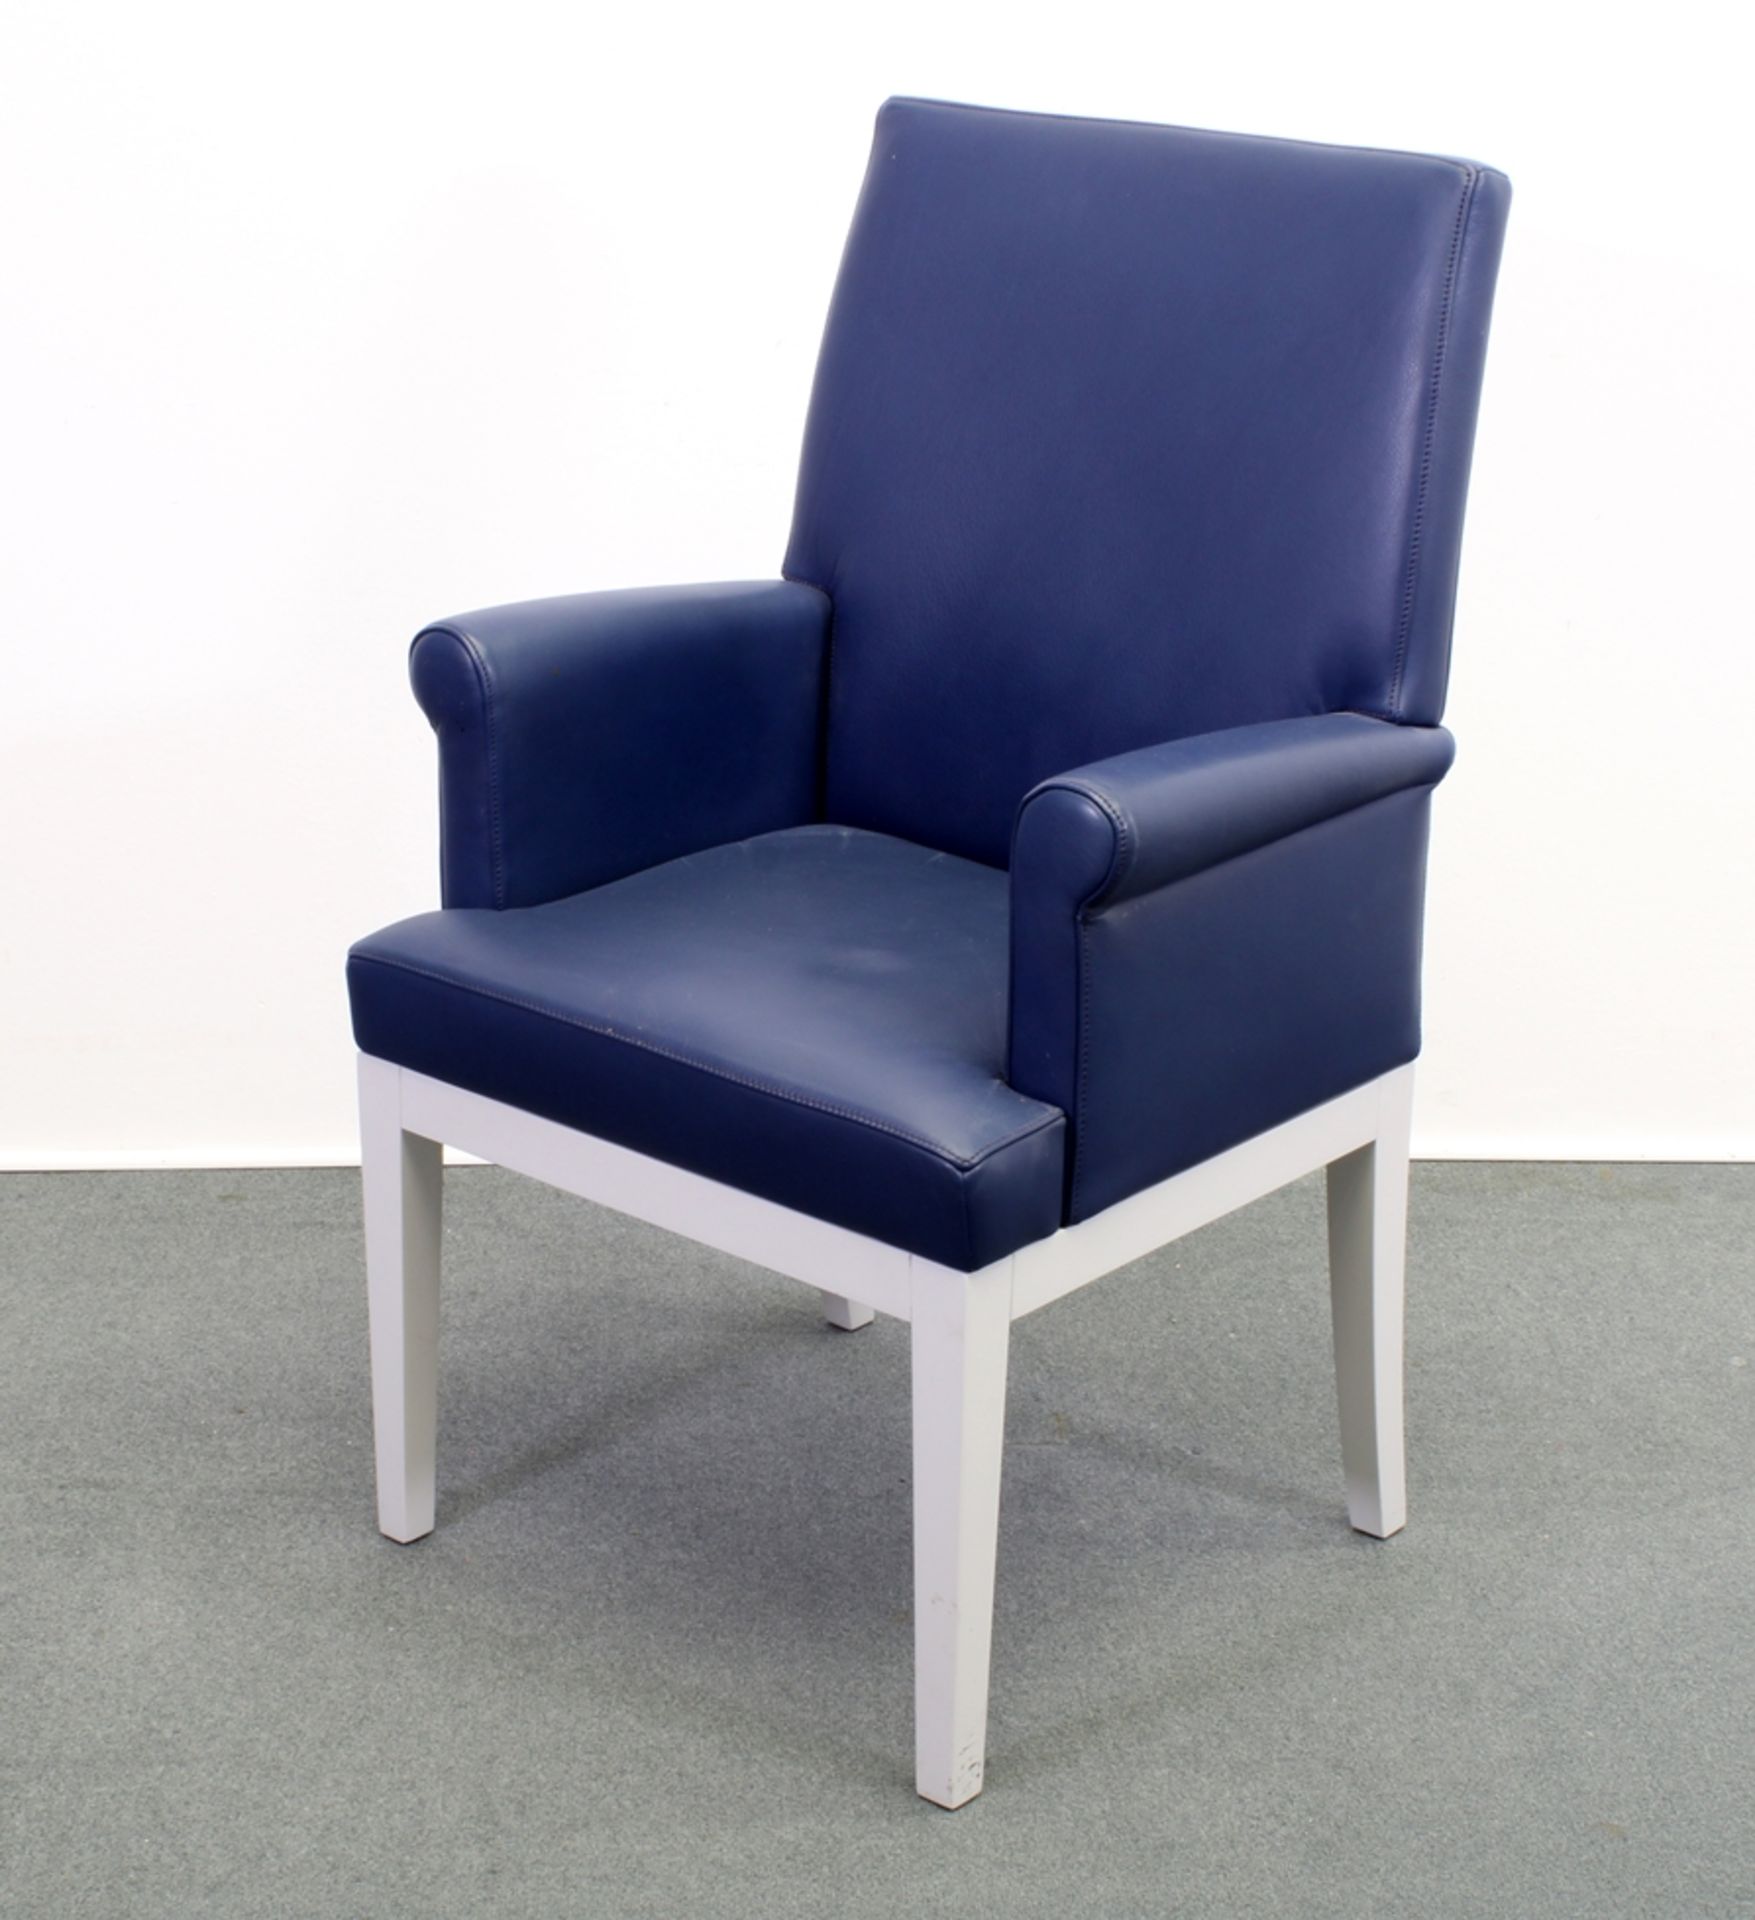 10 Stühle, DeSede DS 209, Schweiz 1999, Design von Jean Pierre Dovat, Polster Leder indigoblau, 8 S - Bild 2 aus 5